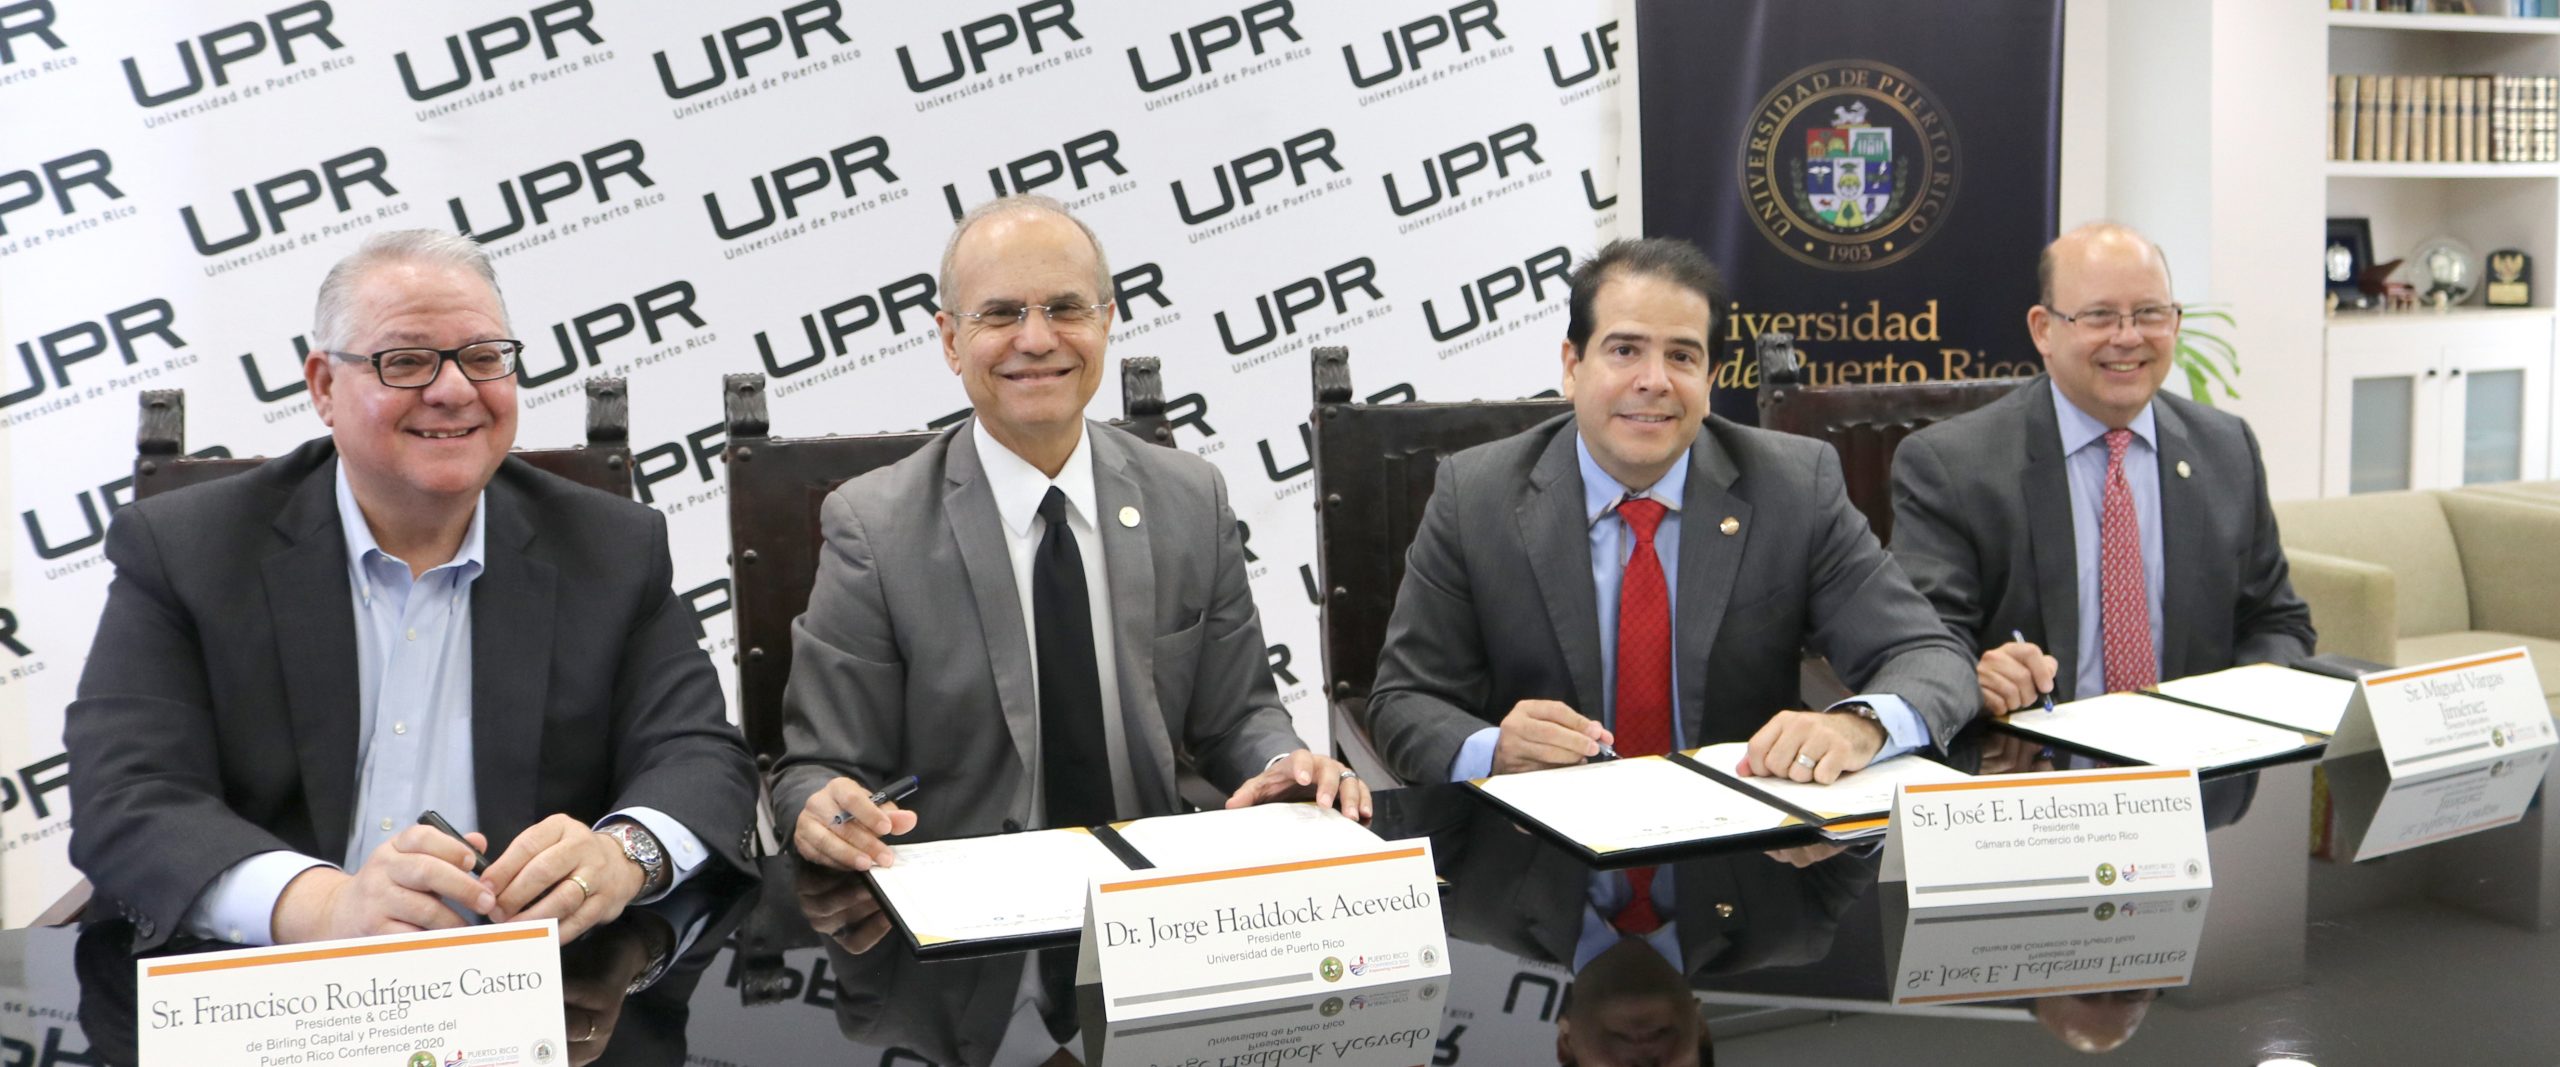 Universidad de Puerto Rico, Cámara de Comercio de Puerto Rico y Birling Capital firman Memorando de Entendimiento para crear la iniciativa Transformando a Puerto Rico como parte del “Puerto Rico Conference 2020”